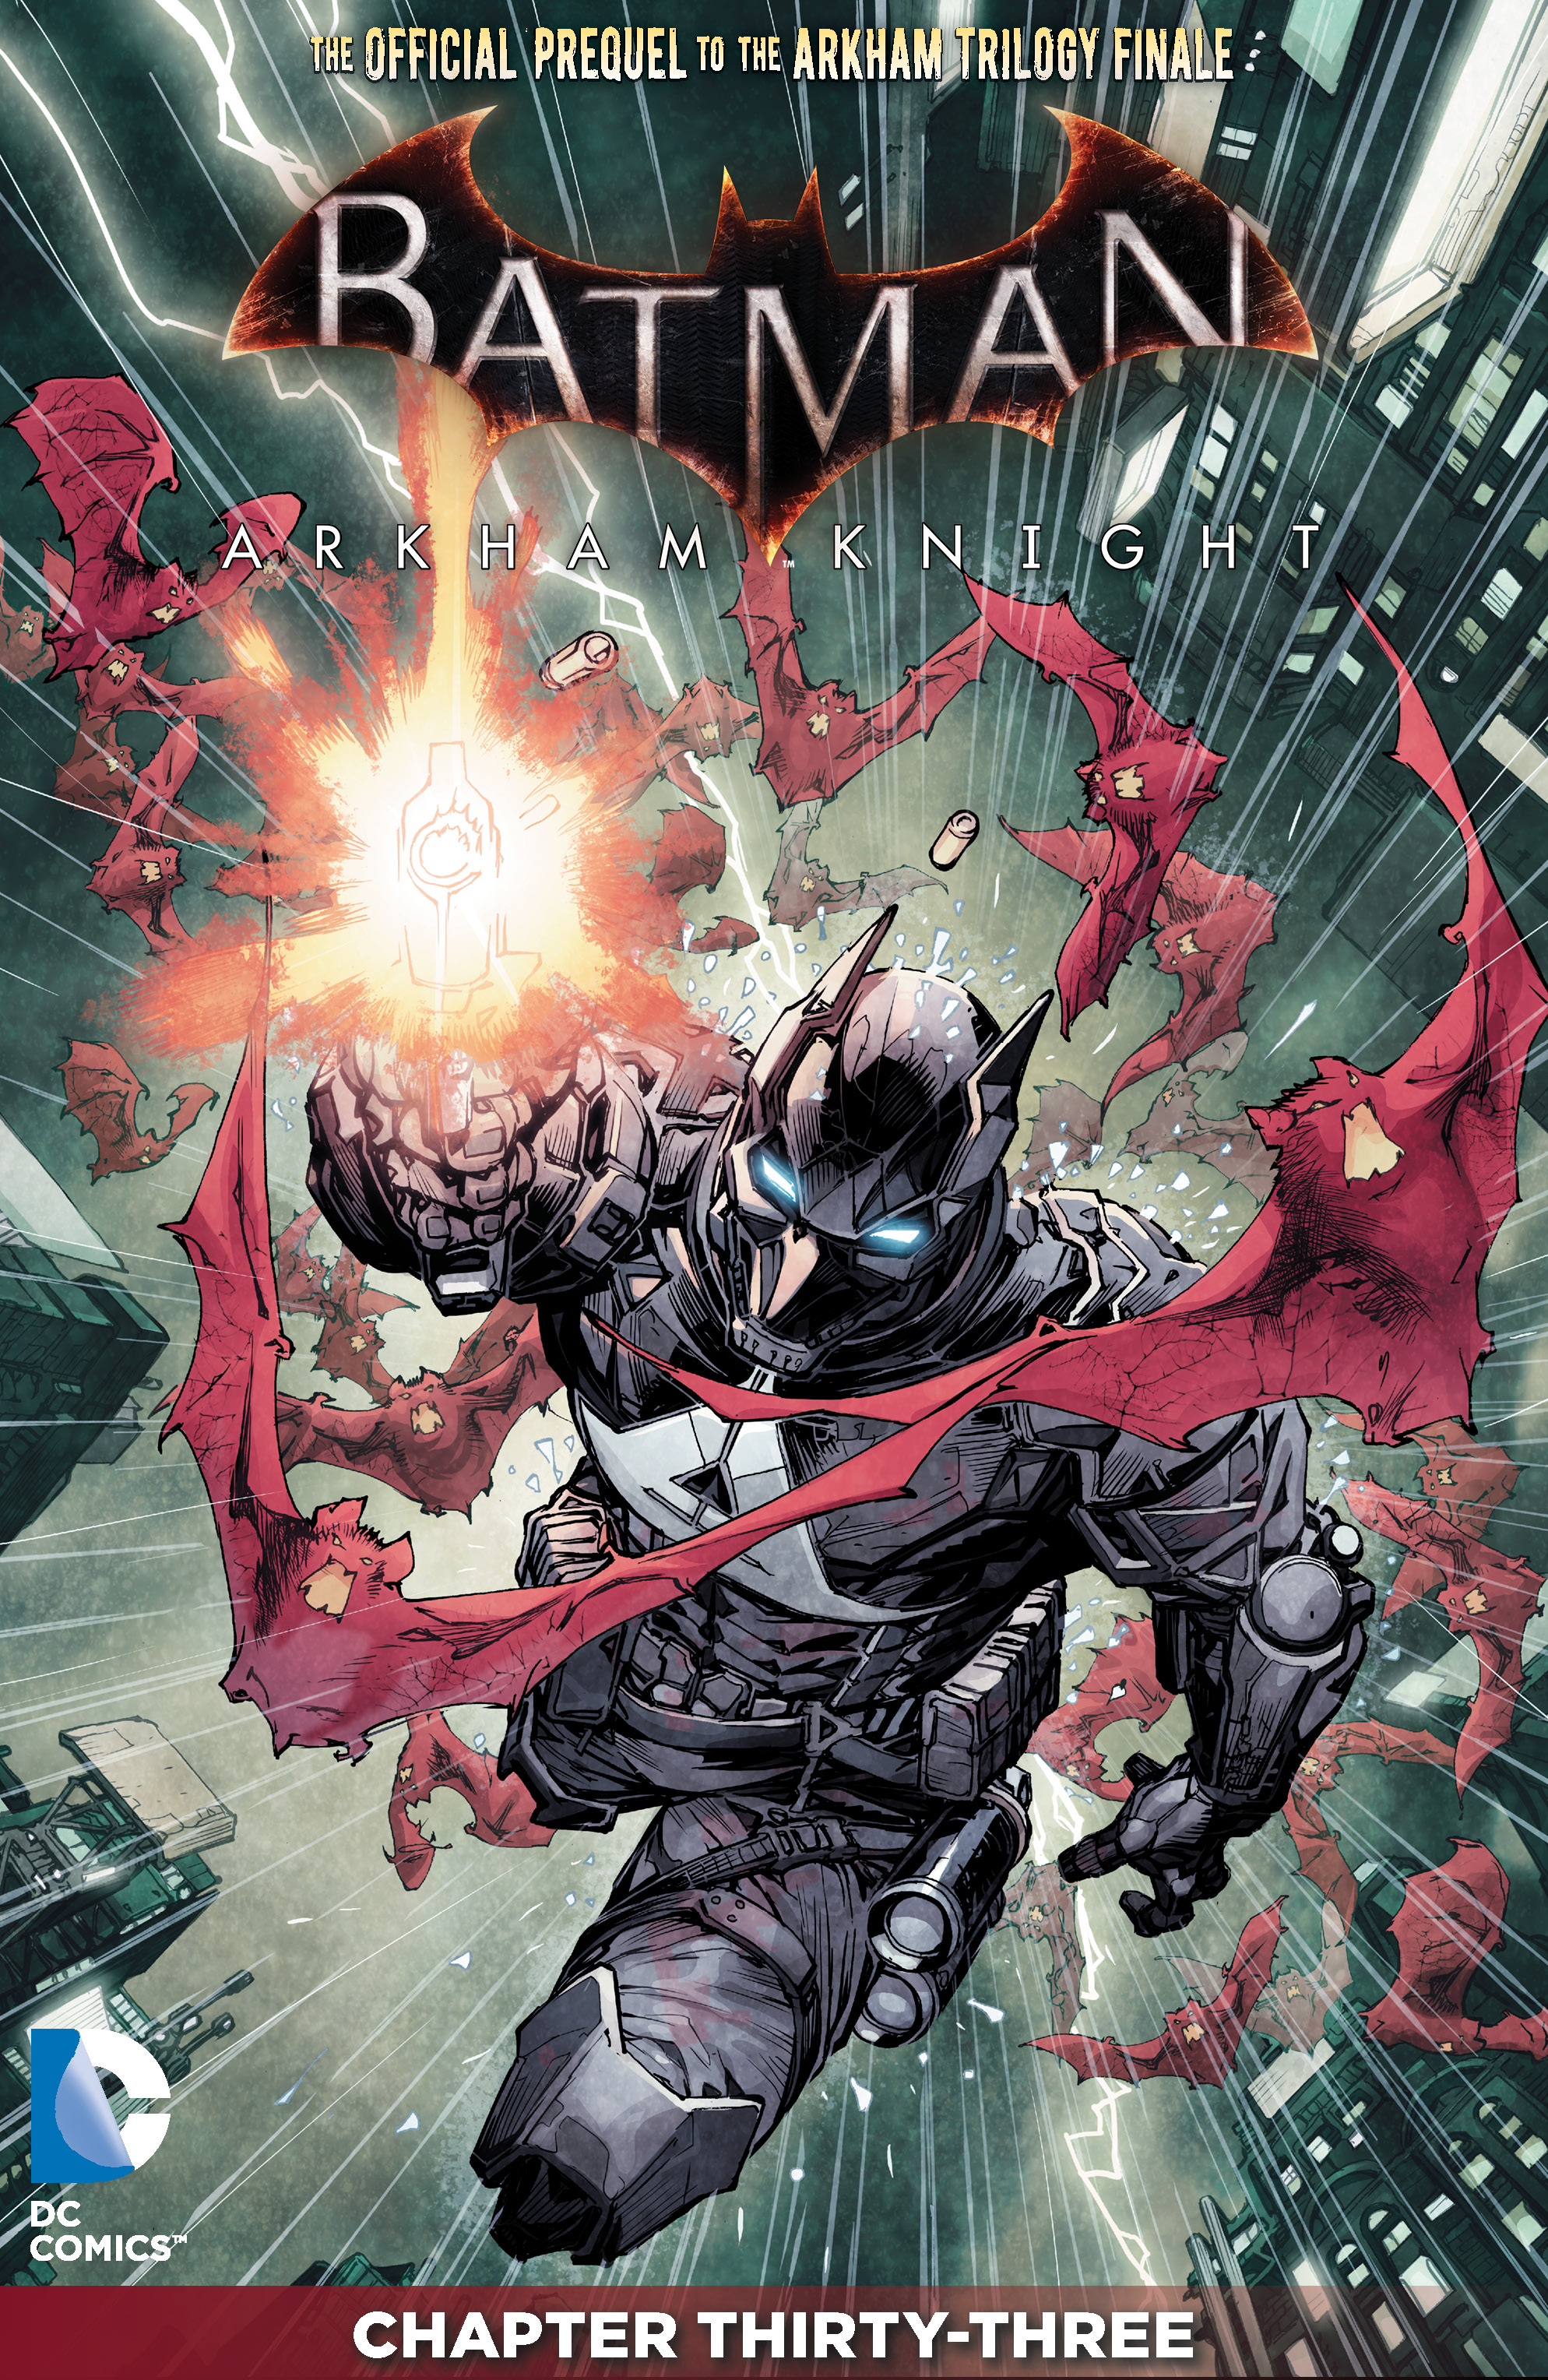 Batman: Arkham Knight #33 preview images